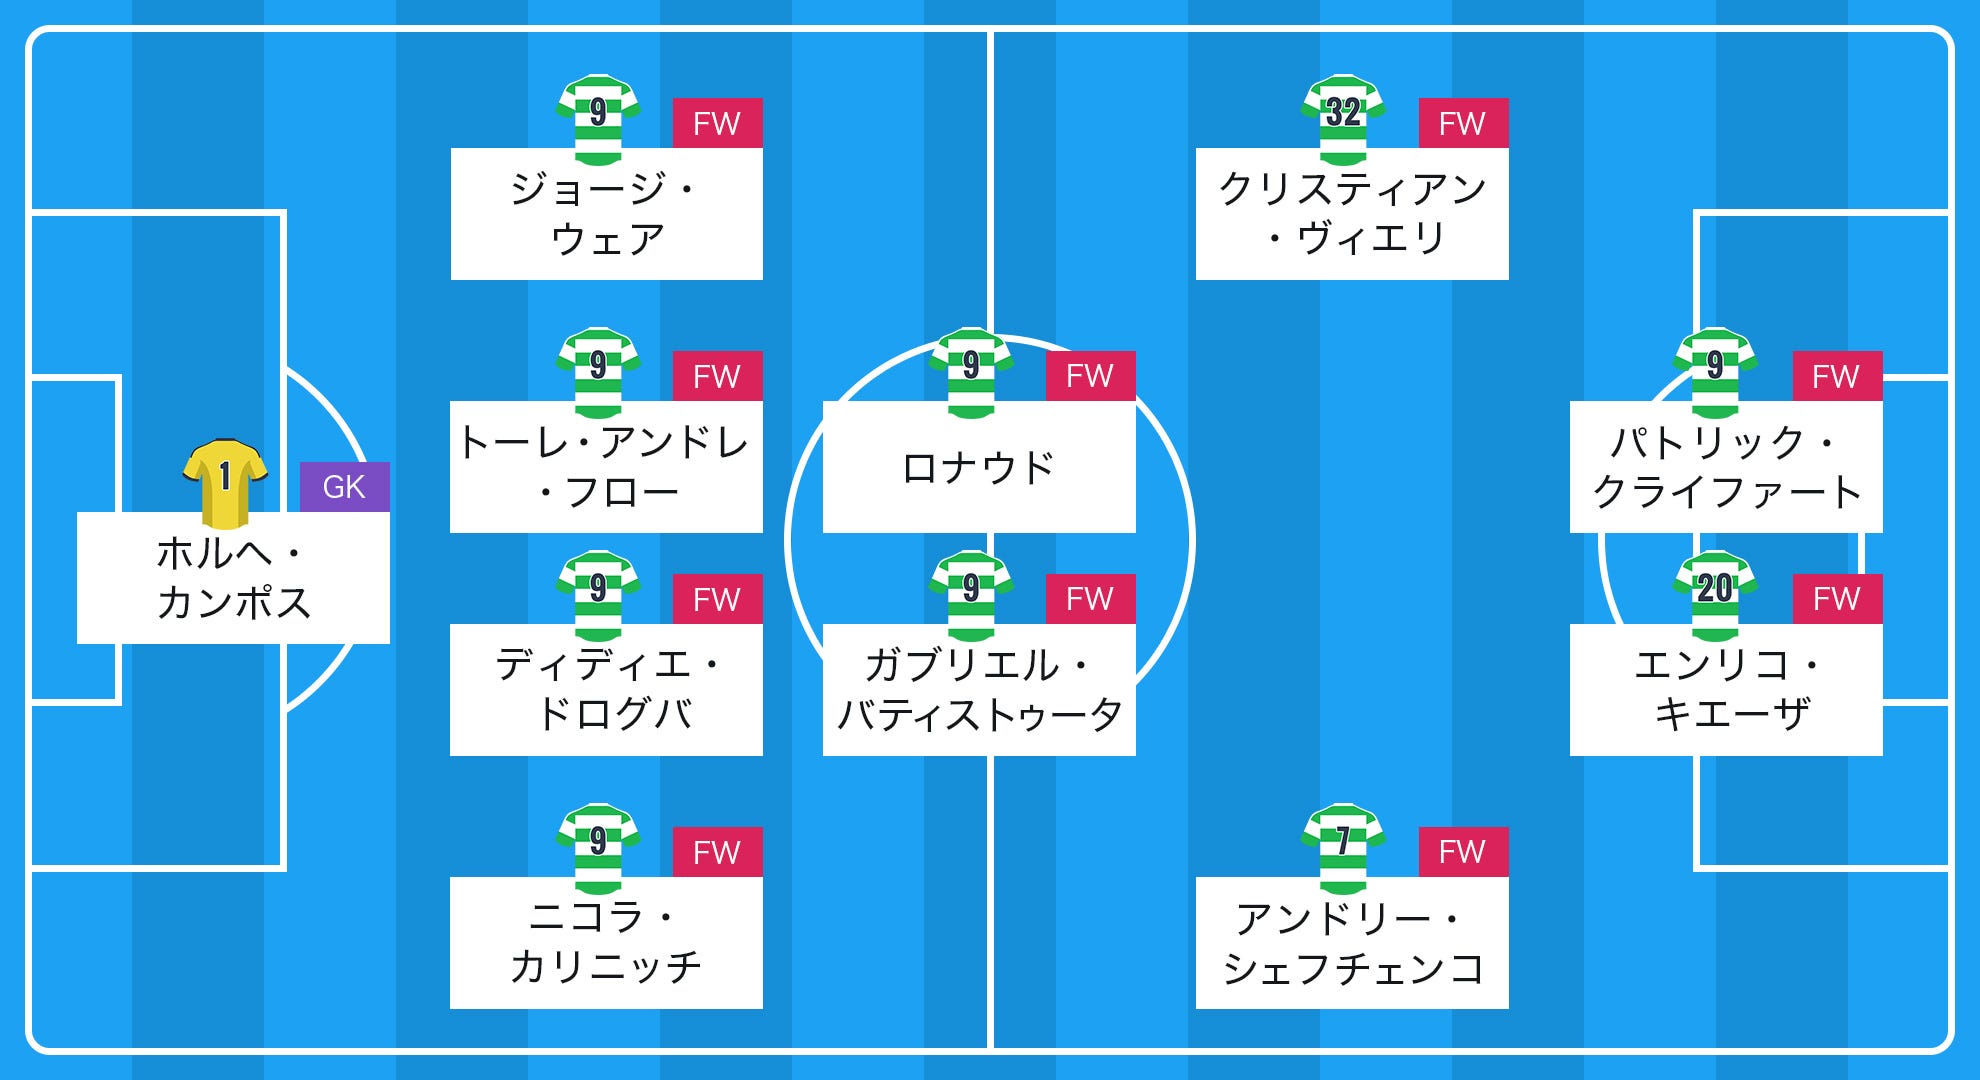 11人全員ストライカーで揃えました 清水 鄭大世が選ぶマイベストイレブン Goal Com 日本